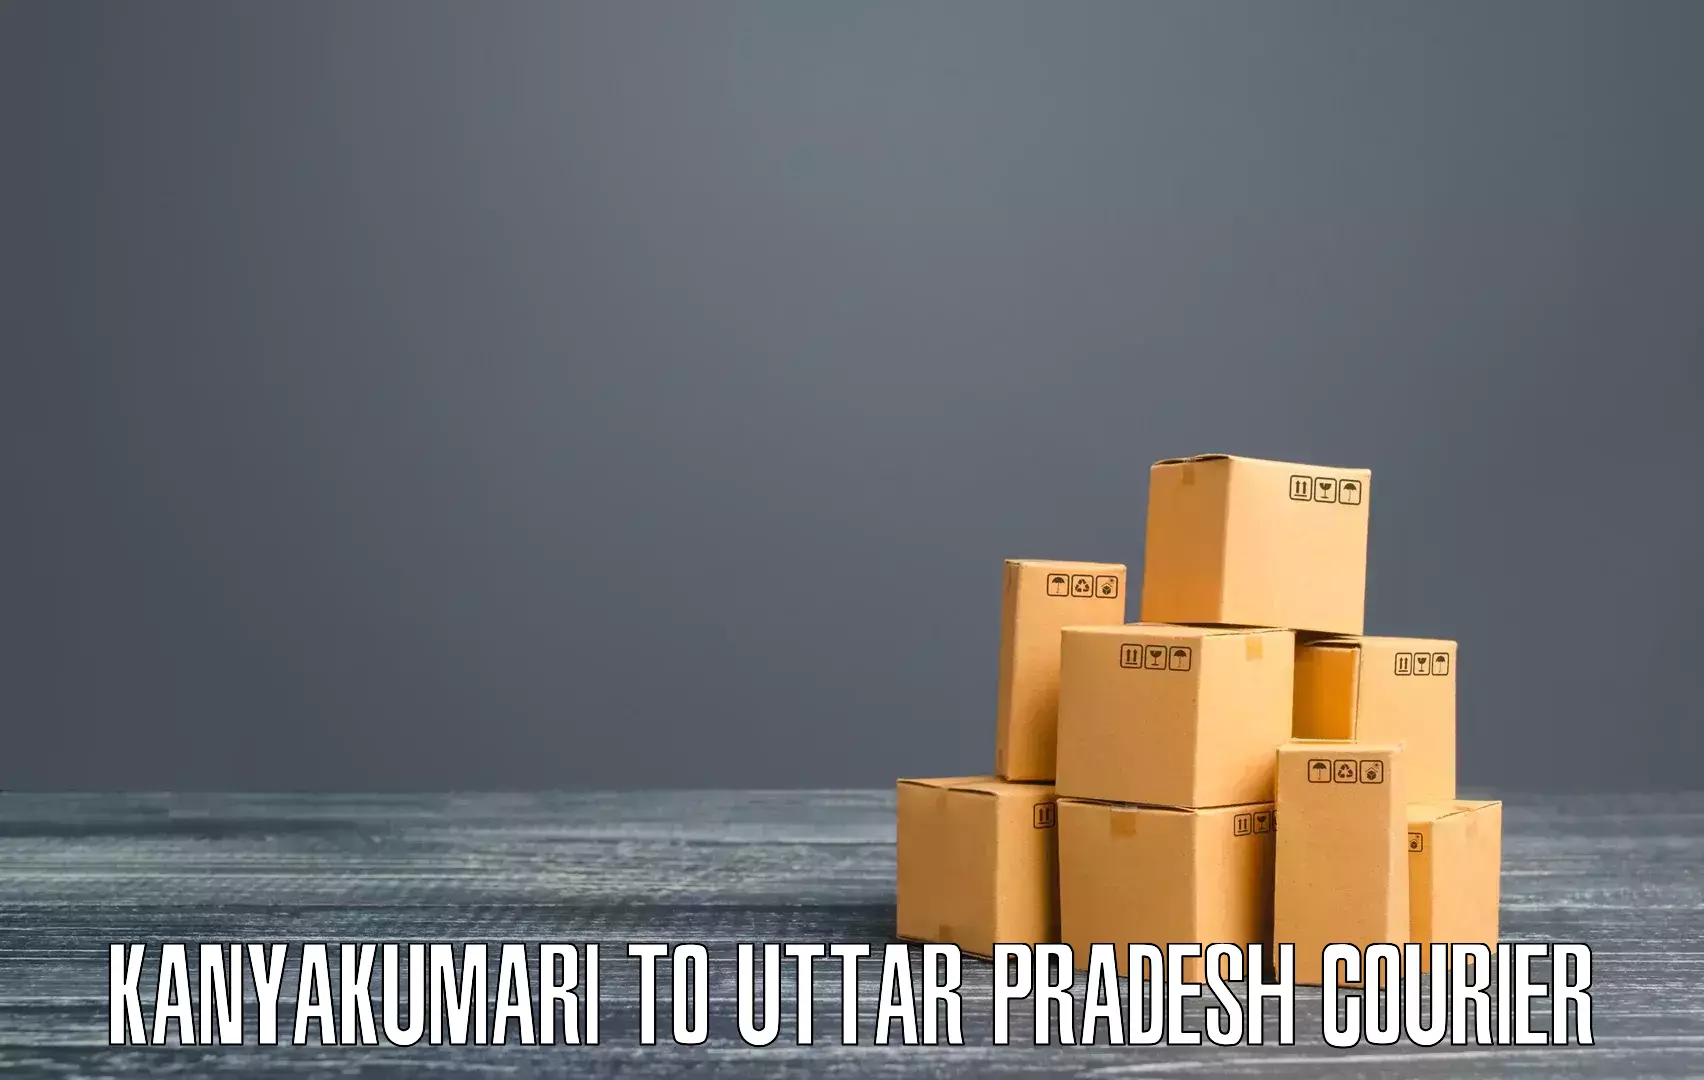 On-call courier service Kanyakumari to Uttar Pradesh